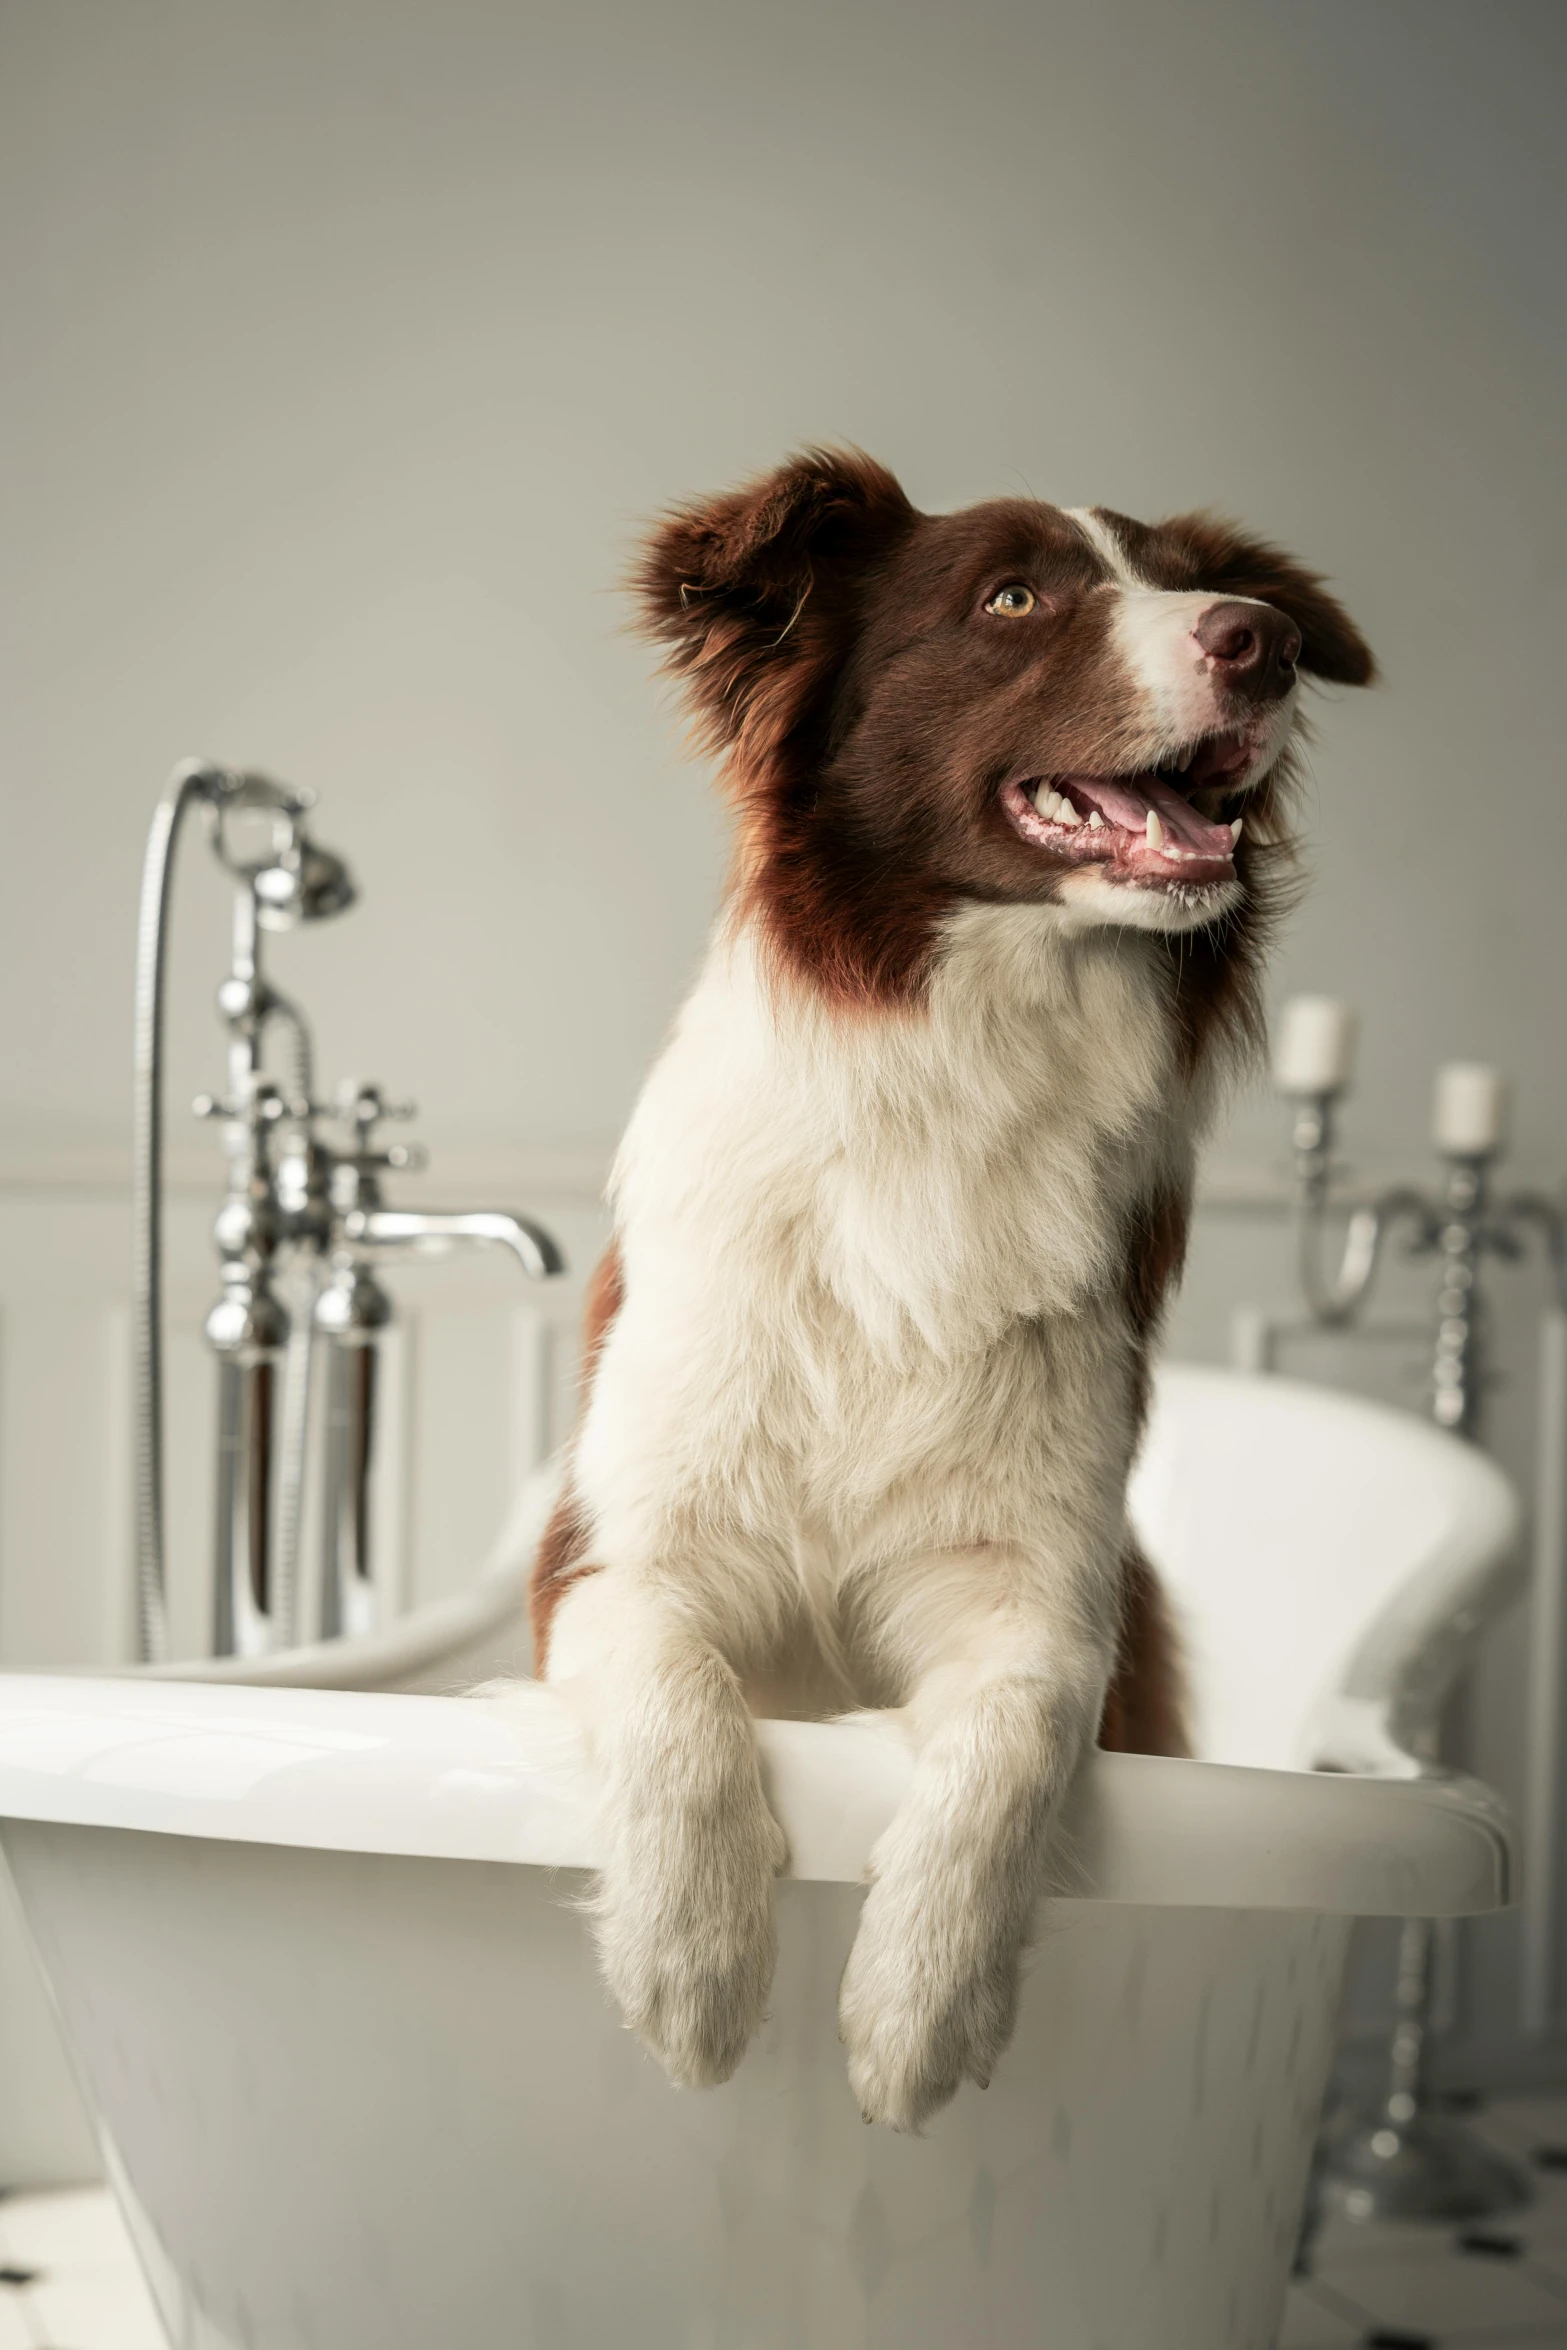 a dog sitting on a bath tub that is in a bathroom